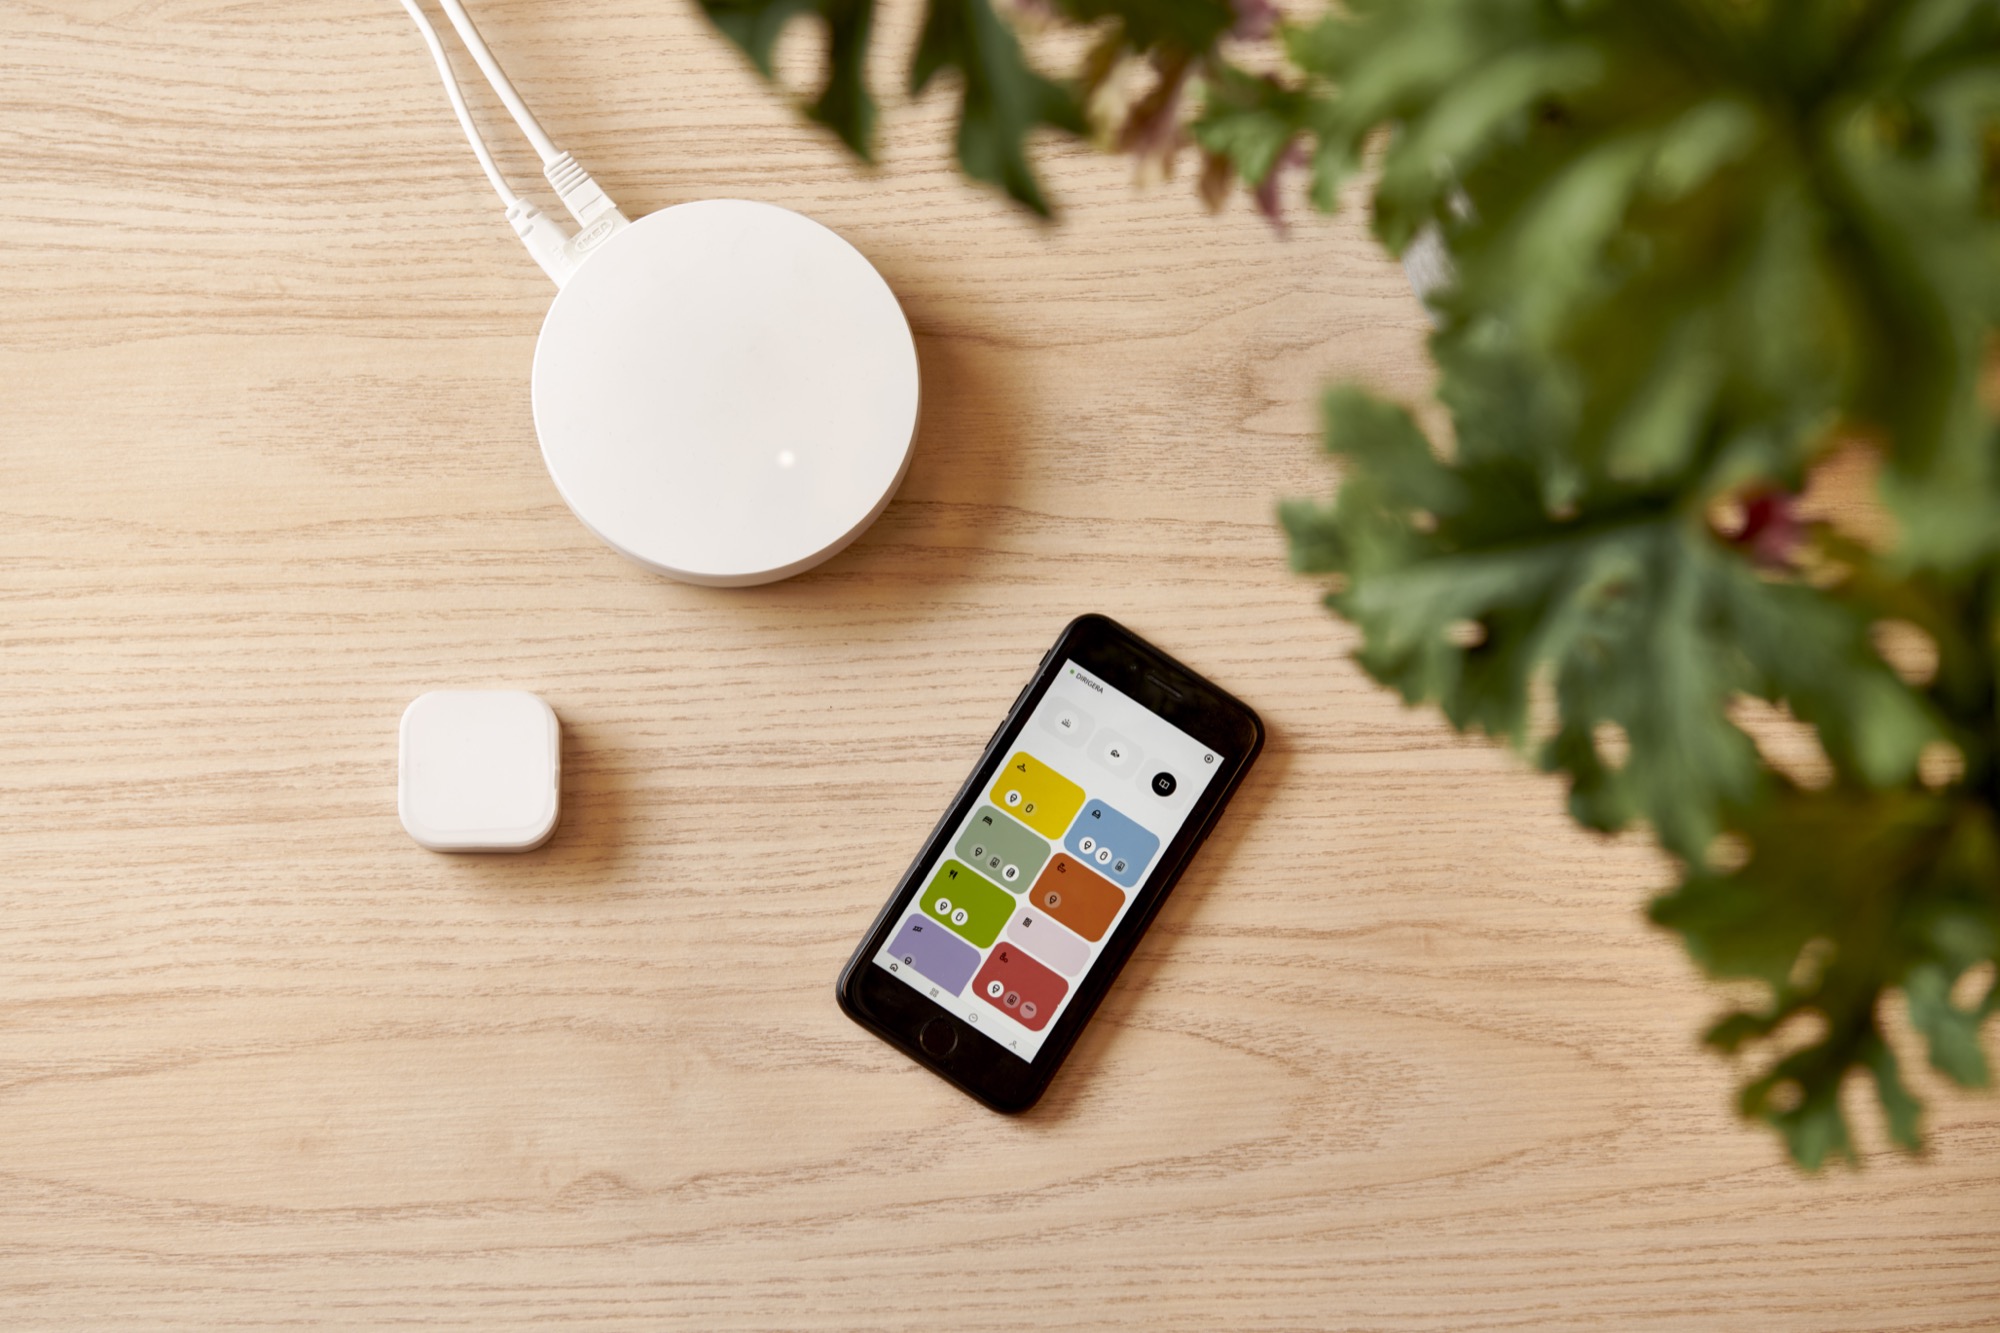 Ikea lancia un nuovo hub con supporto Matter.  Una riprogettazione dell’applicazione casa intelligente.